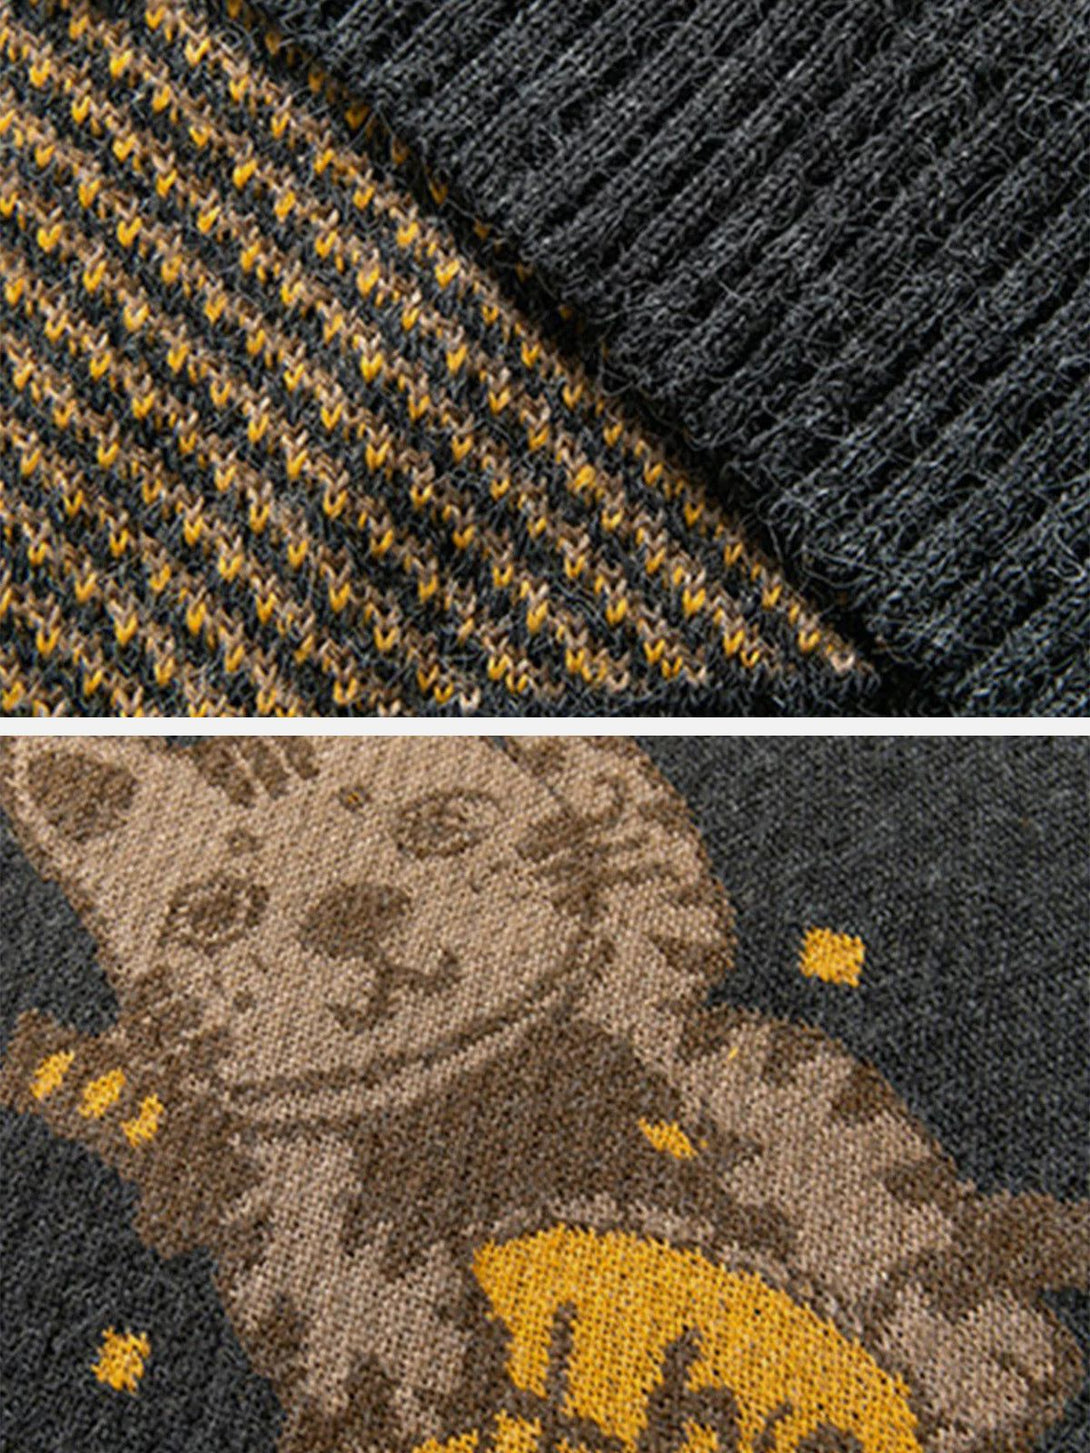 AlanBalen® - Lucky Cat Knit Sweater AlanBalen